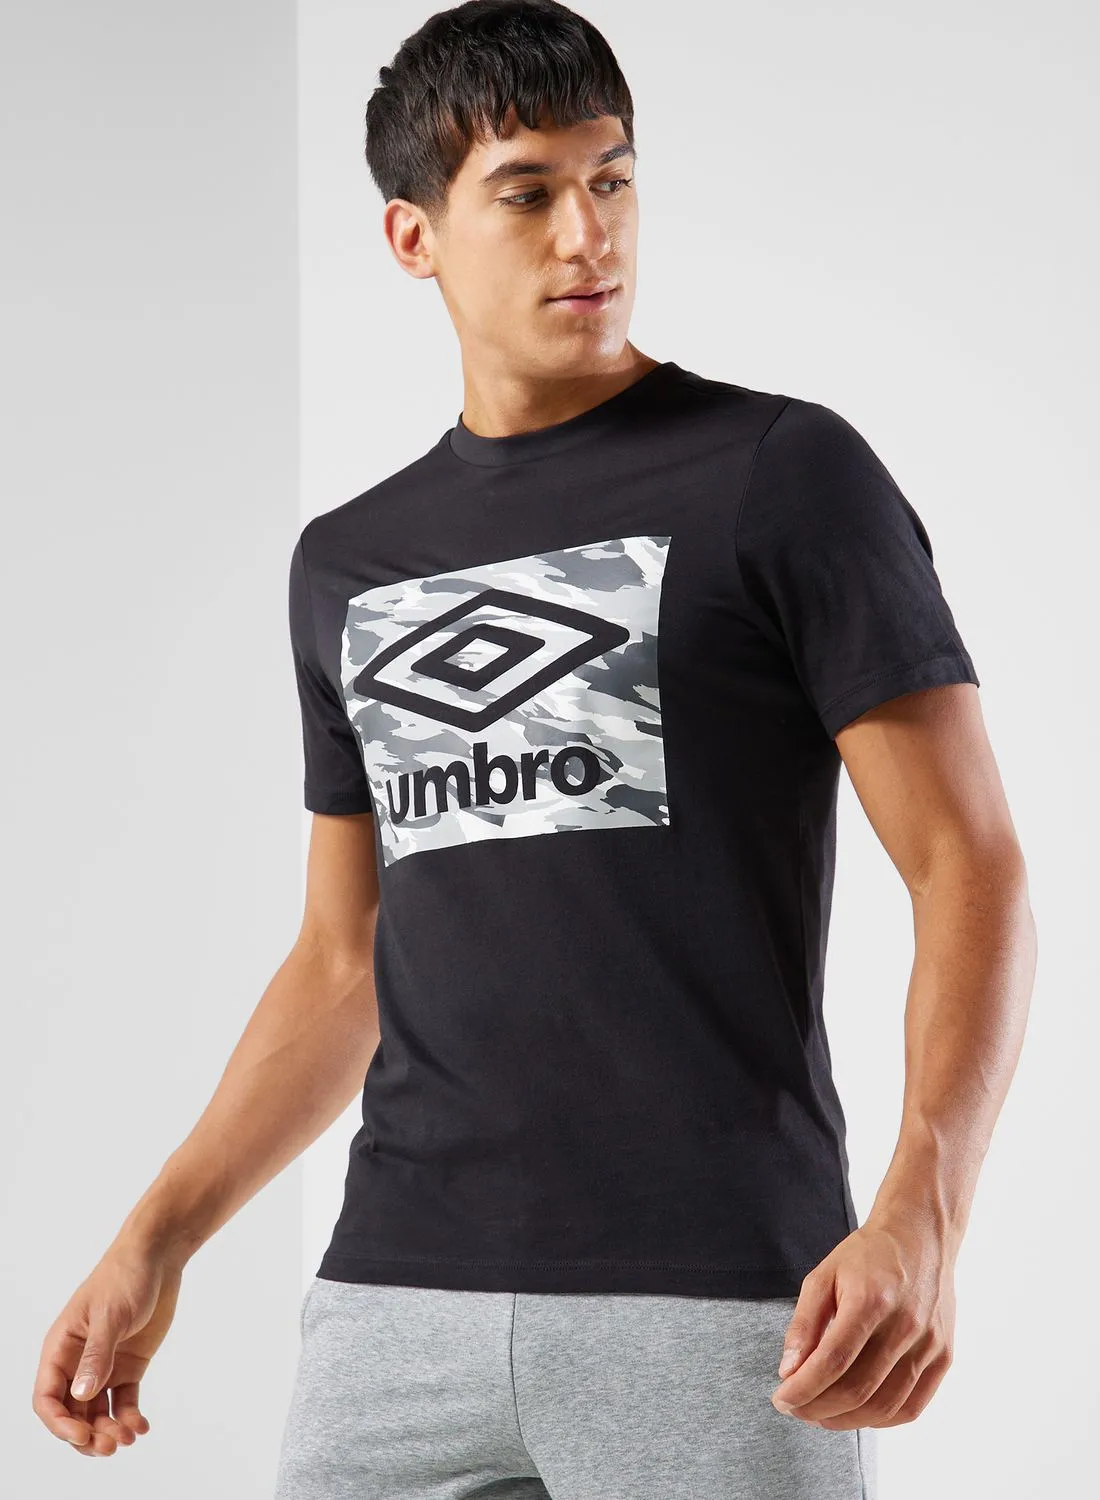 umbro Camo Box Logo Graphic T-Shirt